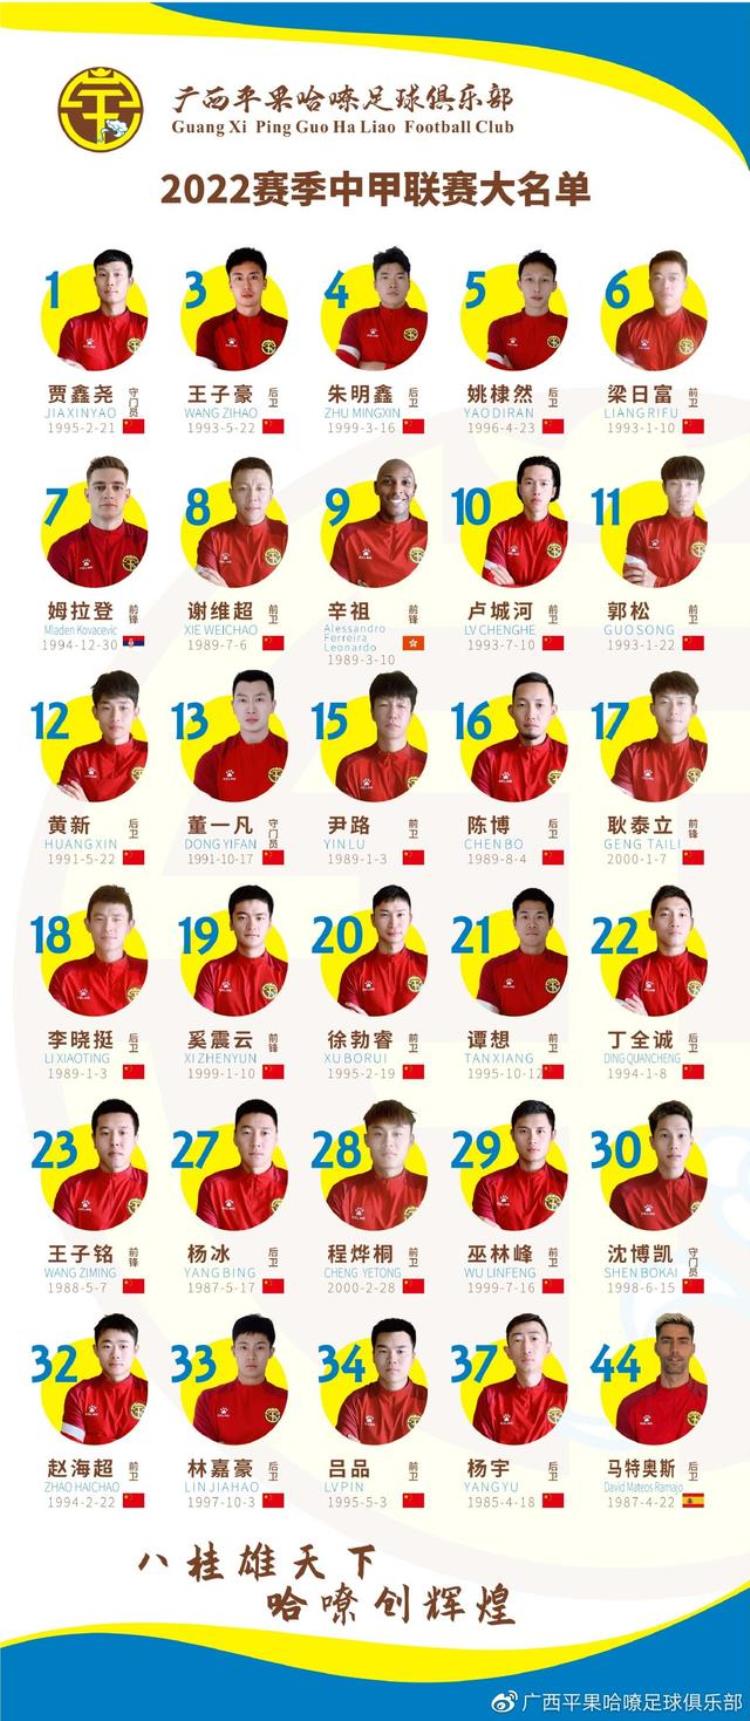 中甲广西平果哈嘹新赛季大名单共30名球员含3名外援